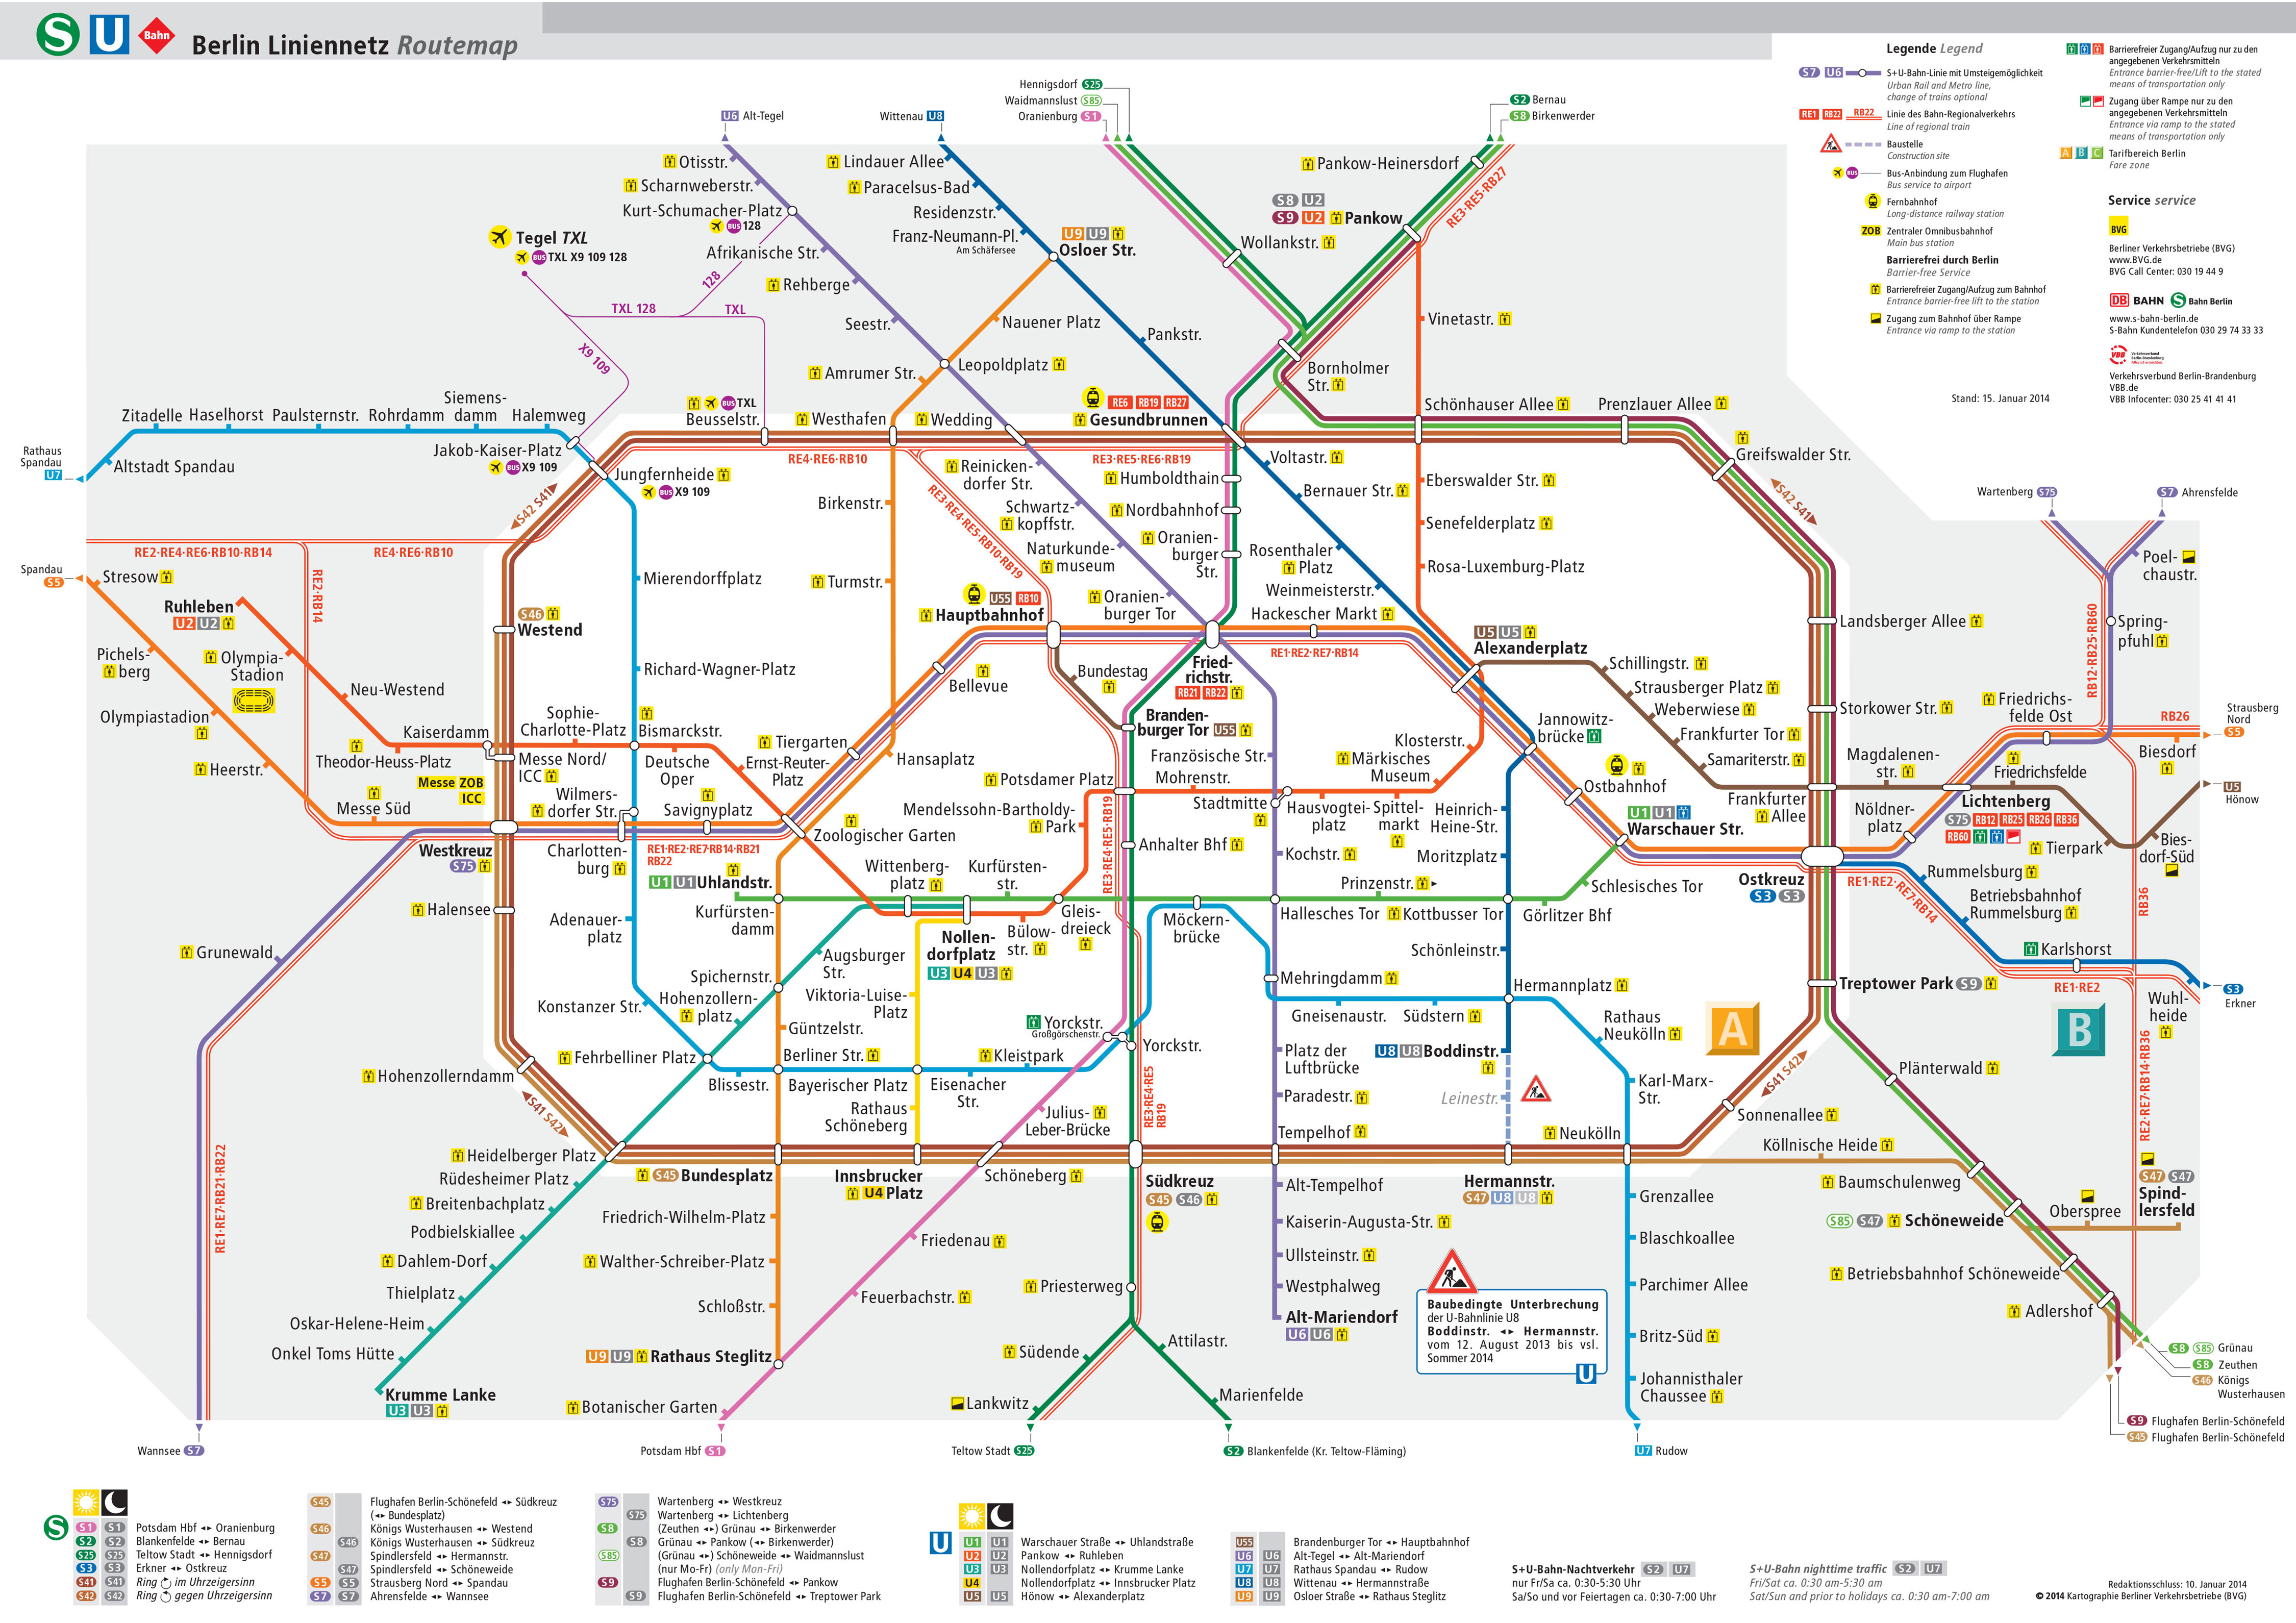 Mapa do metrô (u bahn) e de Berlim estações e linhas